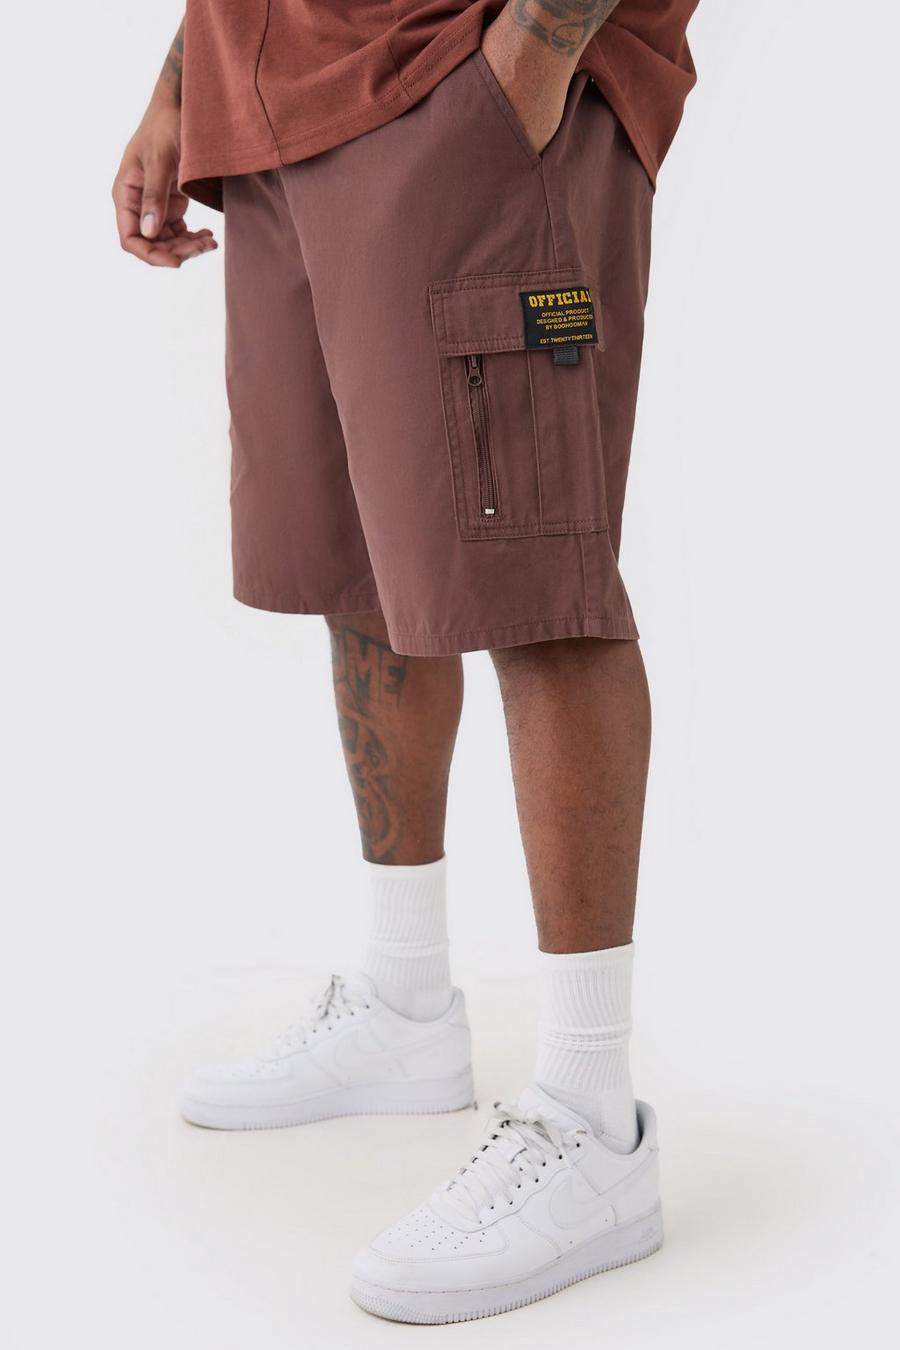 Pantaloncini Cargo rilassati Plus Size in twill con vita fissa e zip, Chocolate